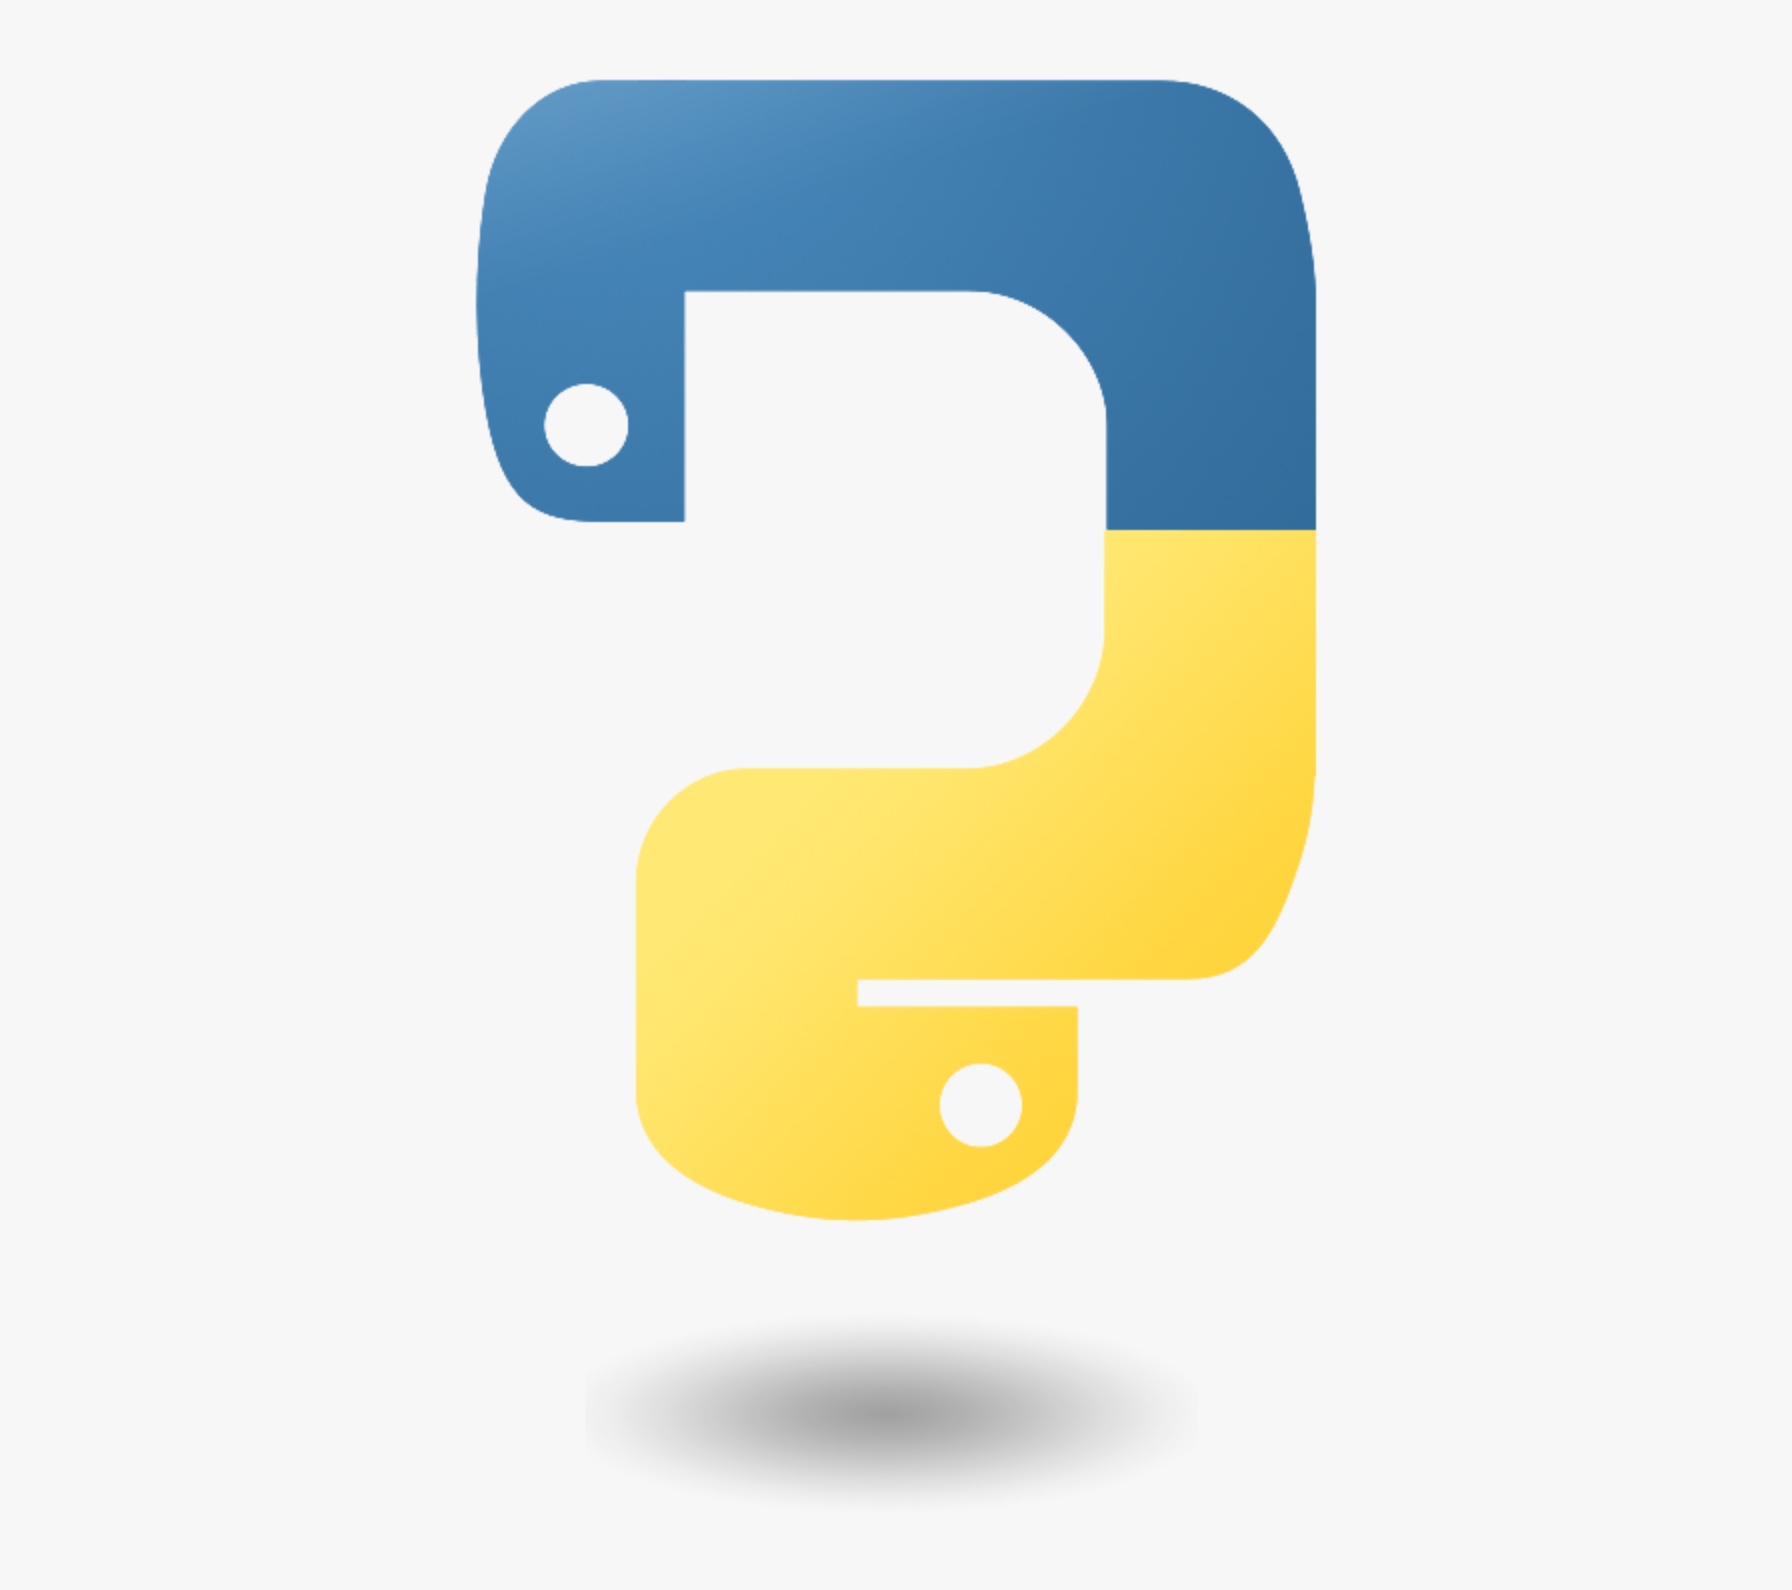 Удав символ. Язык програмирония пион логотип. Значок Python. Python язык программирования лого. Питон язык программирования лого.